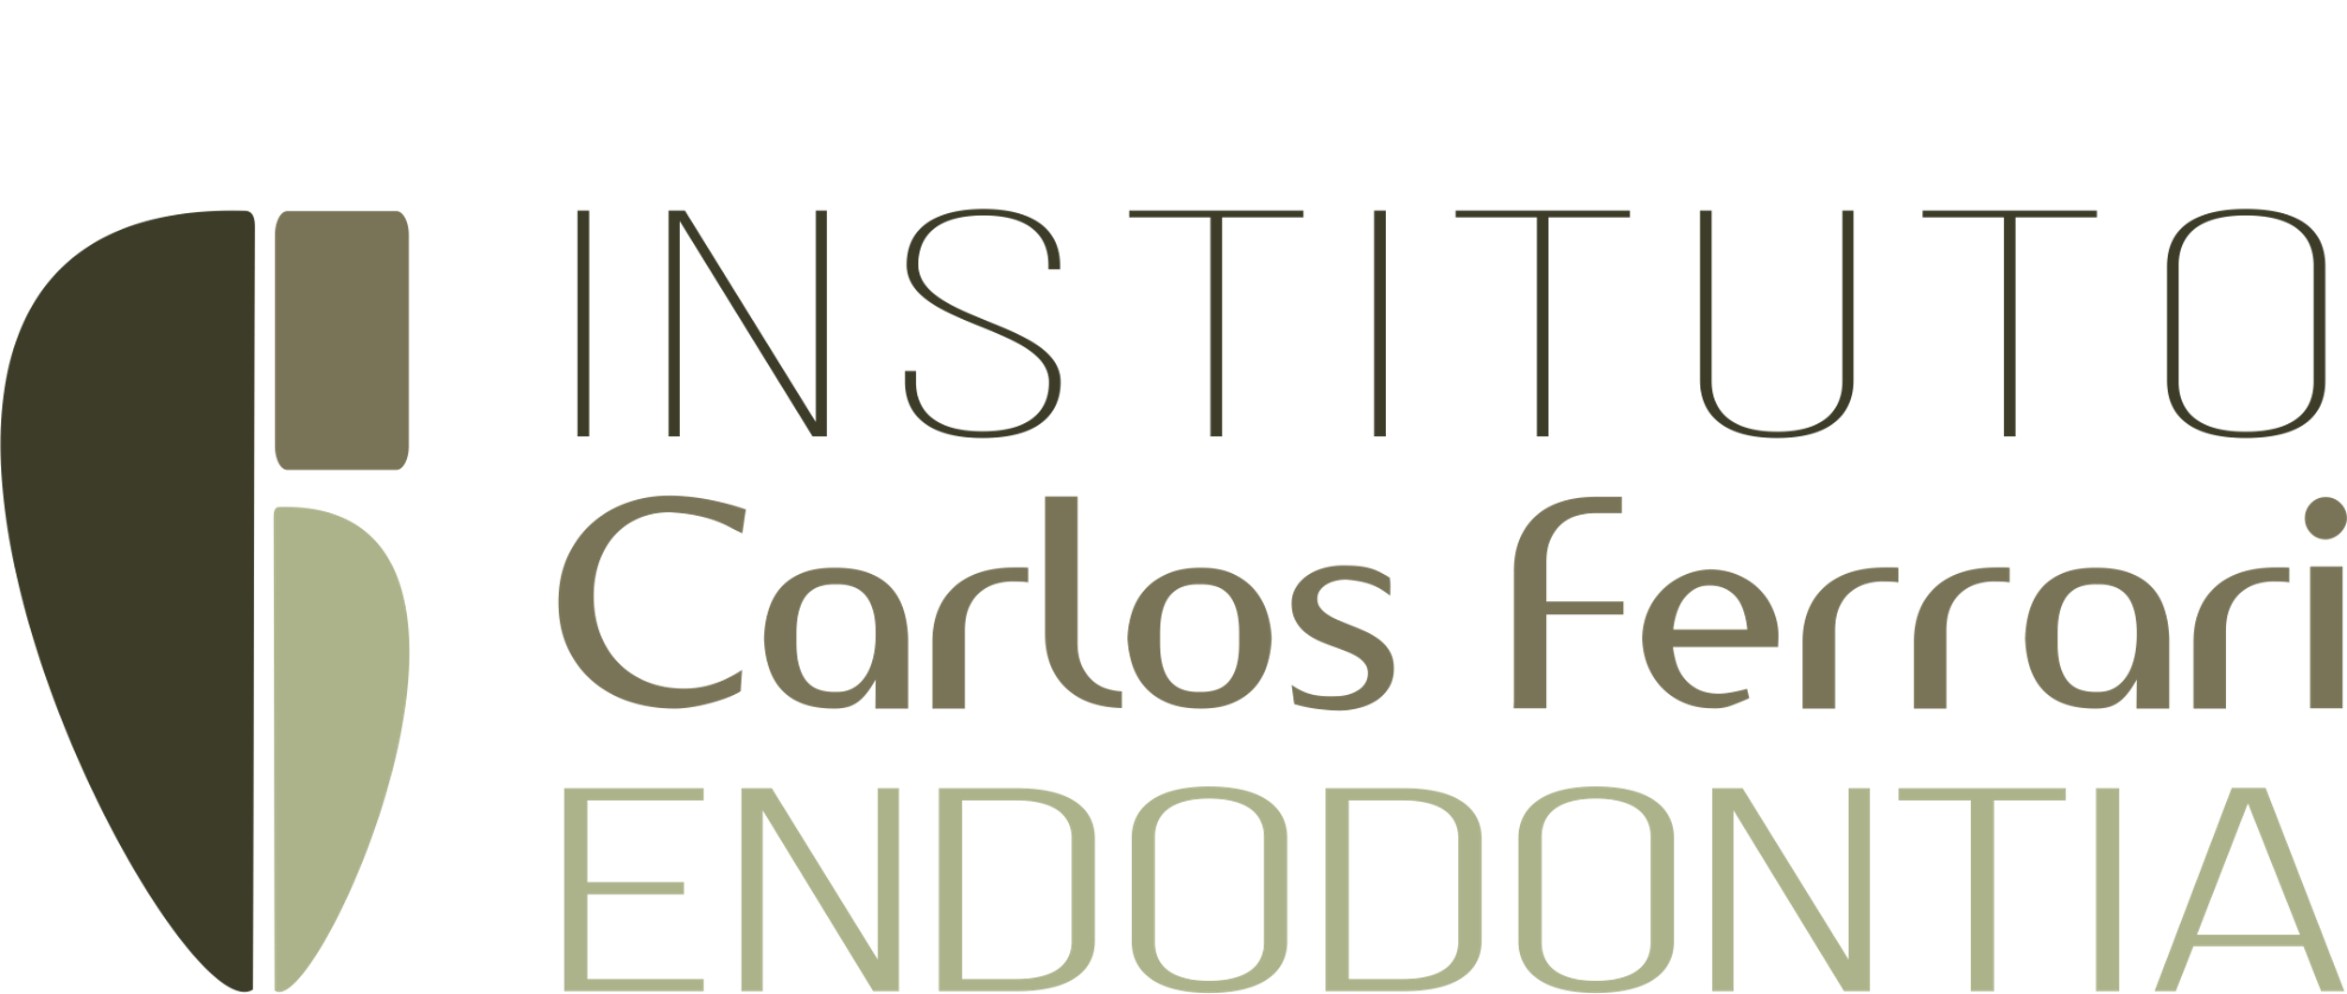 Carlos Ferrari Institute of Endodontics